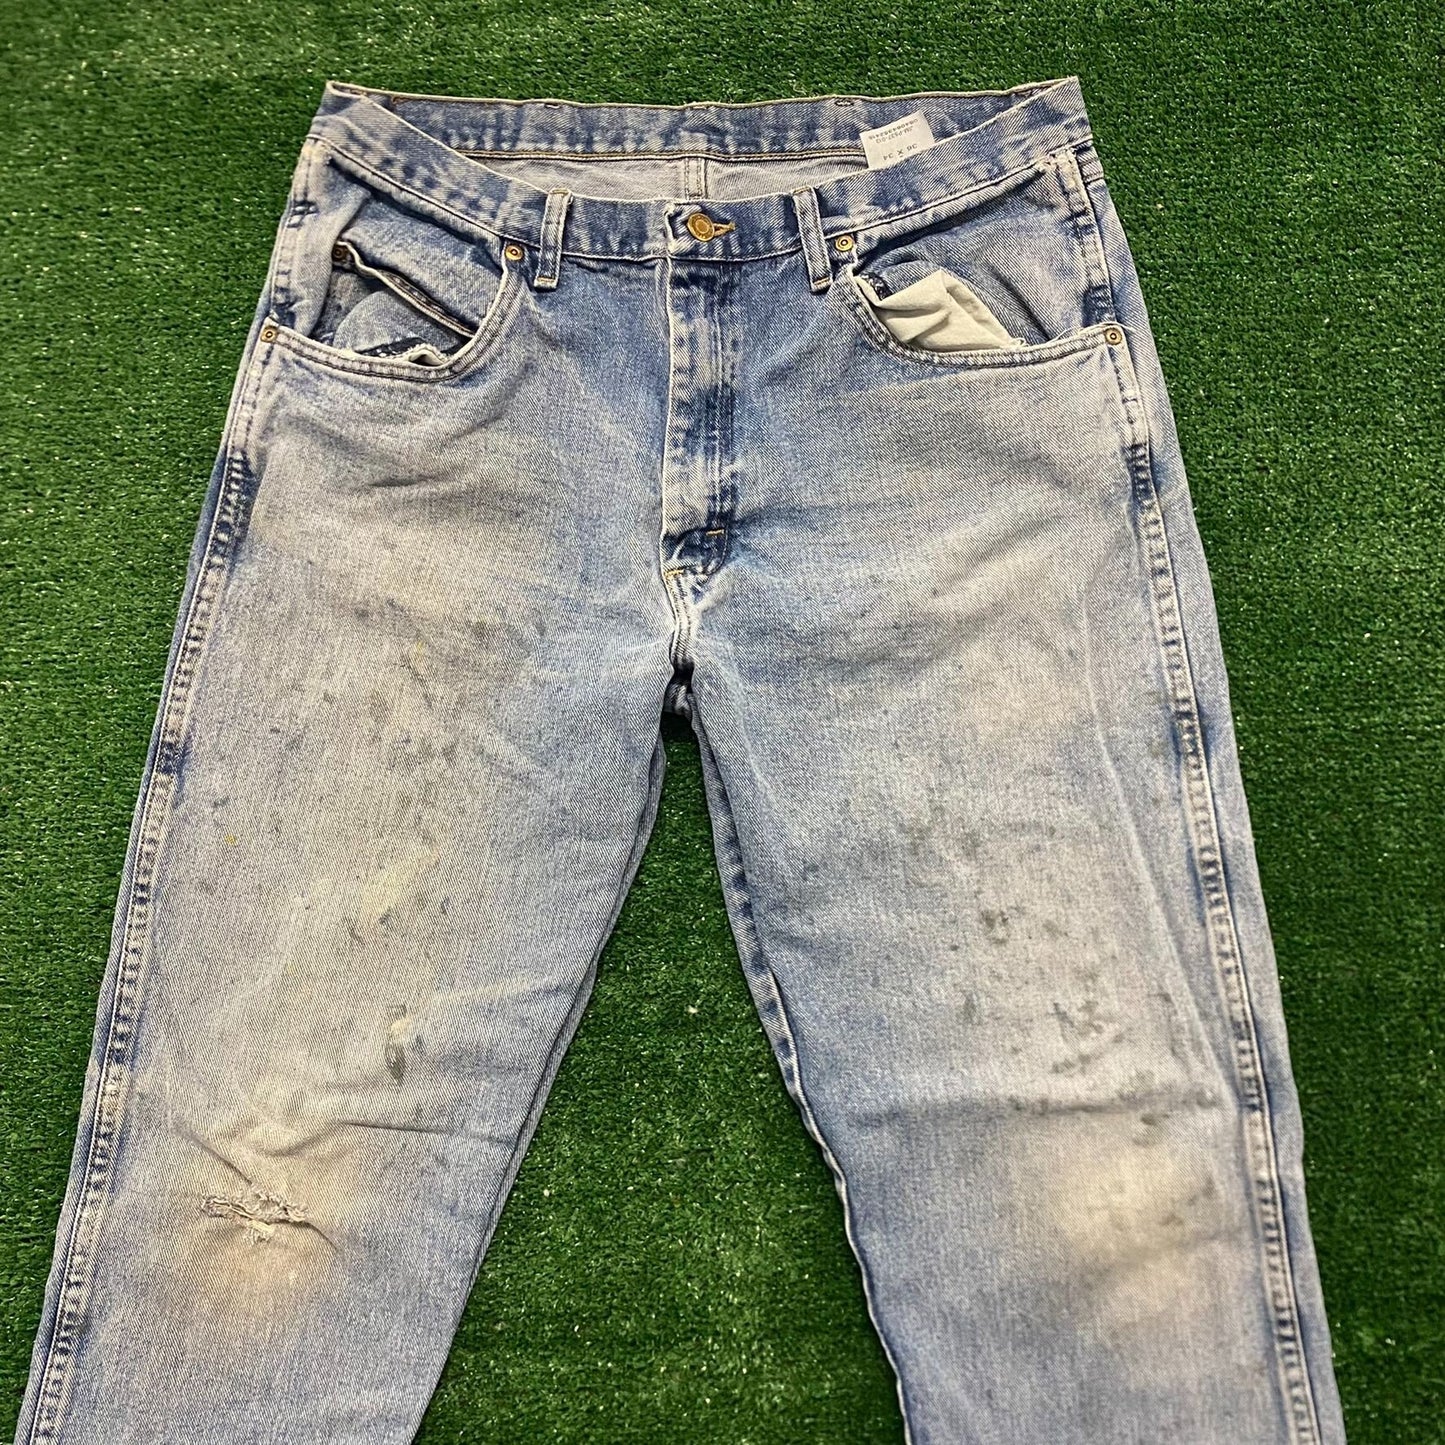 Wrangler Faded Stonewashed Vintage Denim Pants Jeans